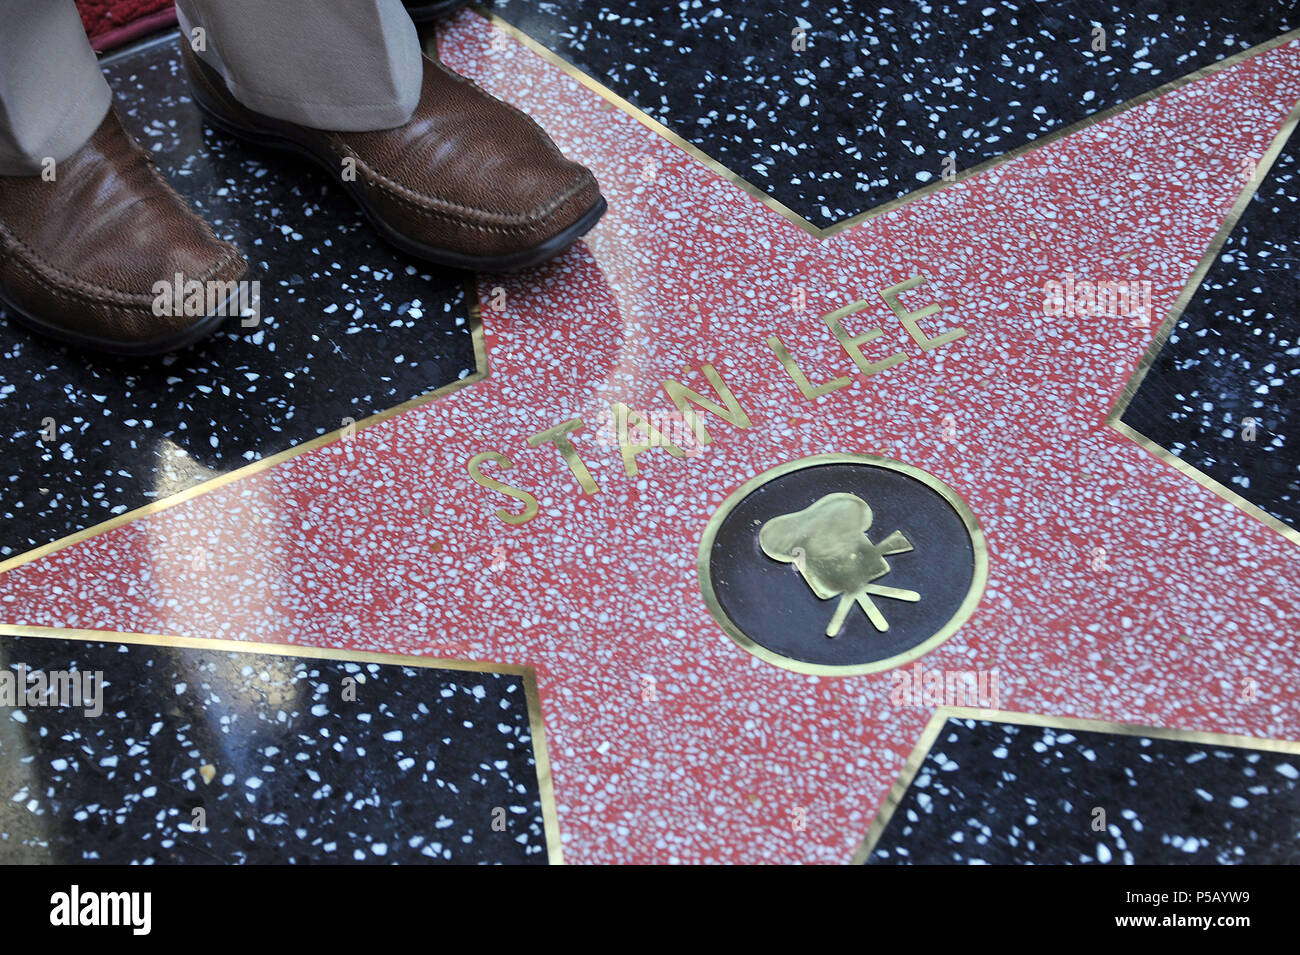 Stan Lee honoré avec une étoile sur le Hollywood Walk of Fame à Los Angeles.Stan Lee  WOF 11 Événement dans la vie d'Hollywood, Californie - Red Carpet Event, USA, Cinéma, Célébrités, photographie, Bestof, Arts, Culture et divertissement, Célébrités, Mode Topix Meilleur de Hollywood, la vie, événement dans la vie d'Hollywood, Californie - cinéma, télévision, célébrités, célébrités de la musique, Topix Bestof, Arts, Culture et loisirs, photographie, tsuni@Gamma-USA.com , Tsuni enquête de crédit / USA, honoré par une étoile sur le Hollywood Walk ofFame à Los Angeles, 2011 Banque D'Images